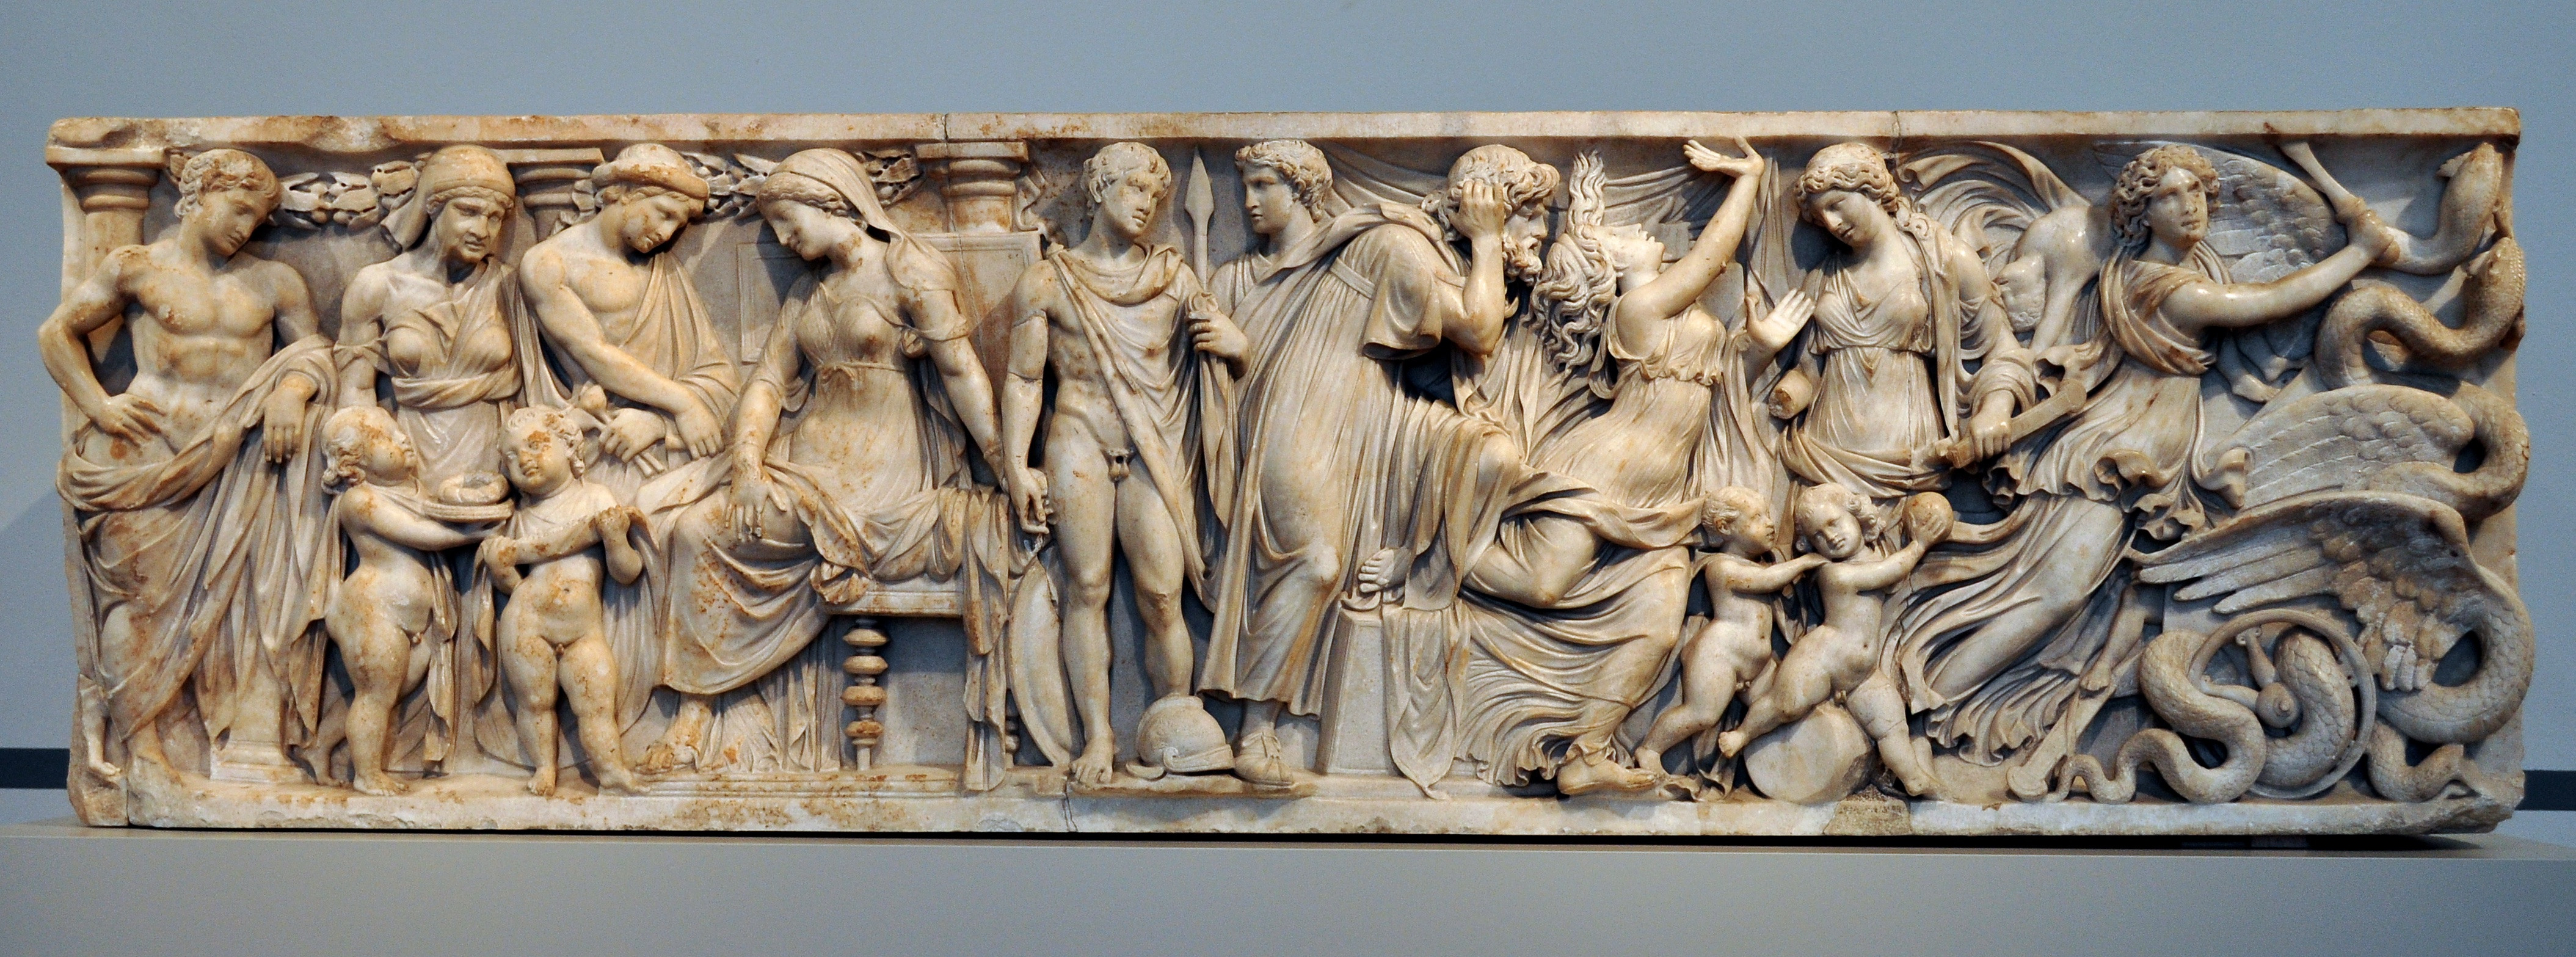 Римский саркофаг с&nbsp;барельефом, изображающим историю Медеи. Ок. 150 н.э. Altes Museum, Berlin